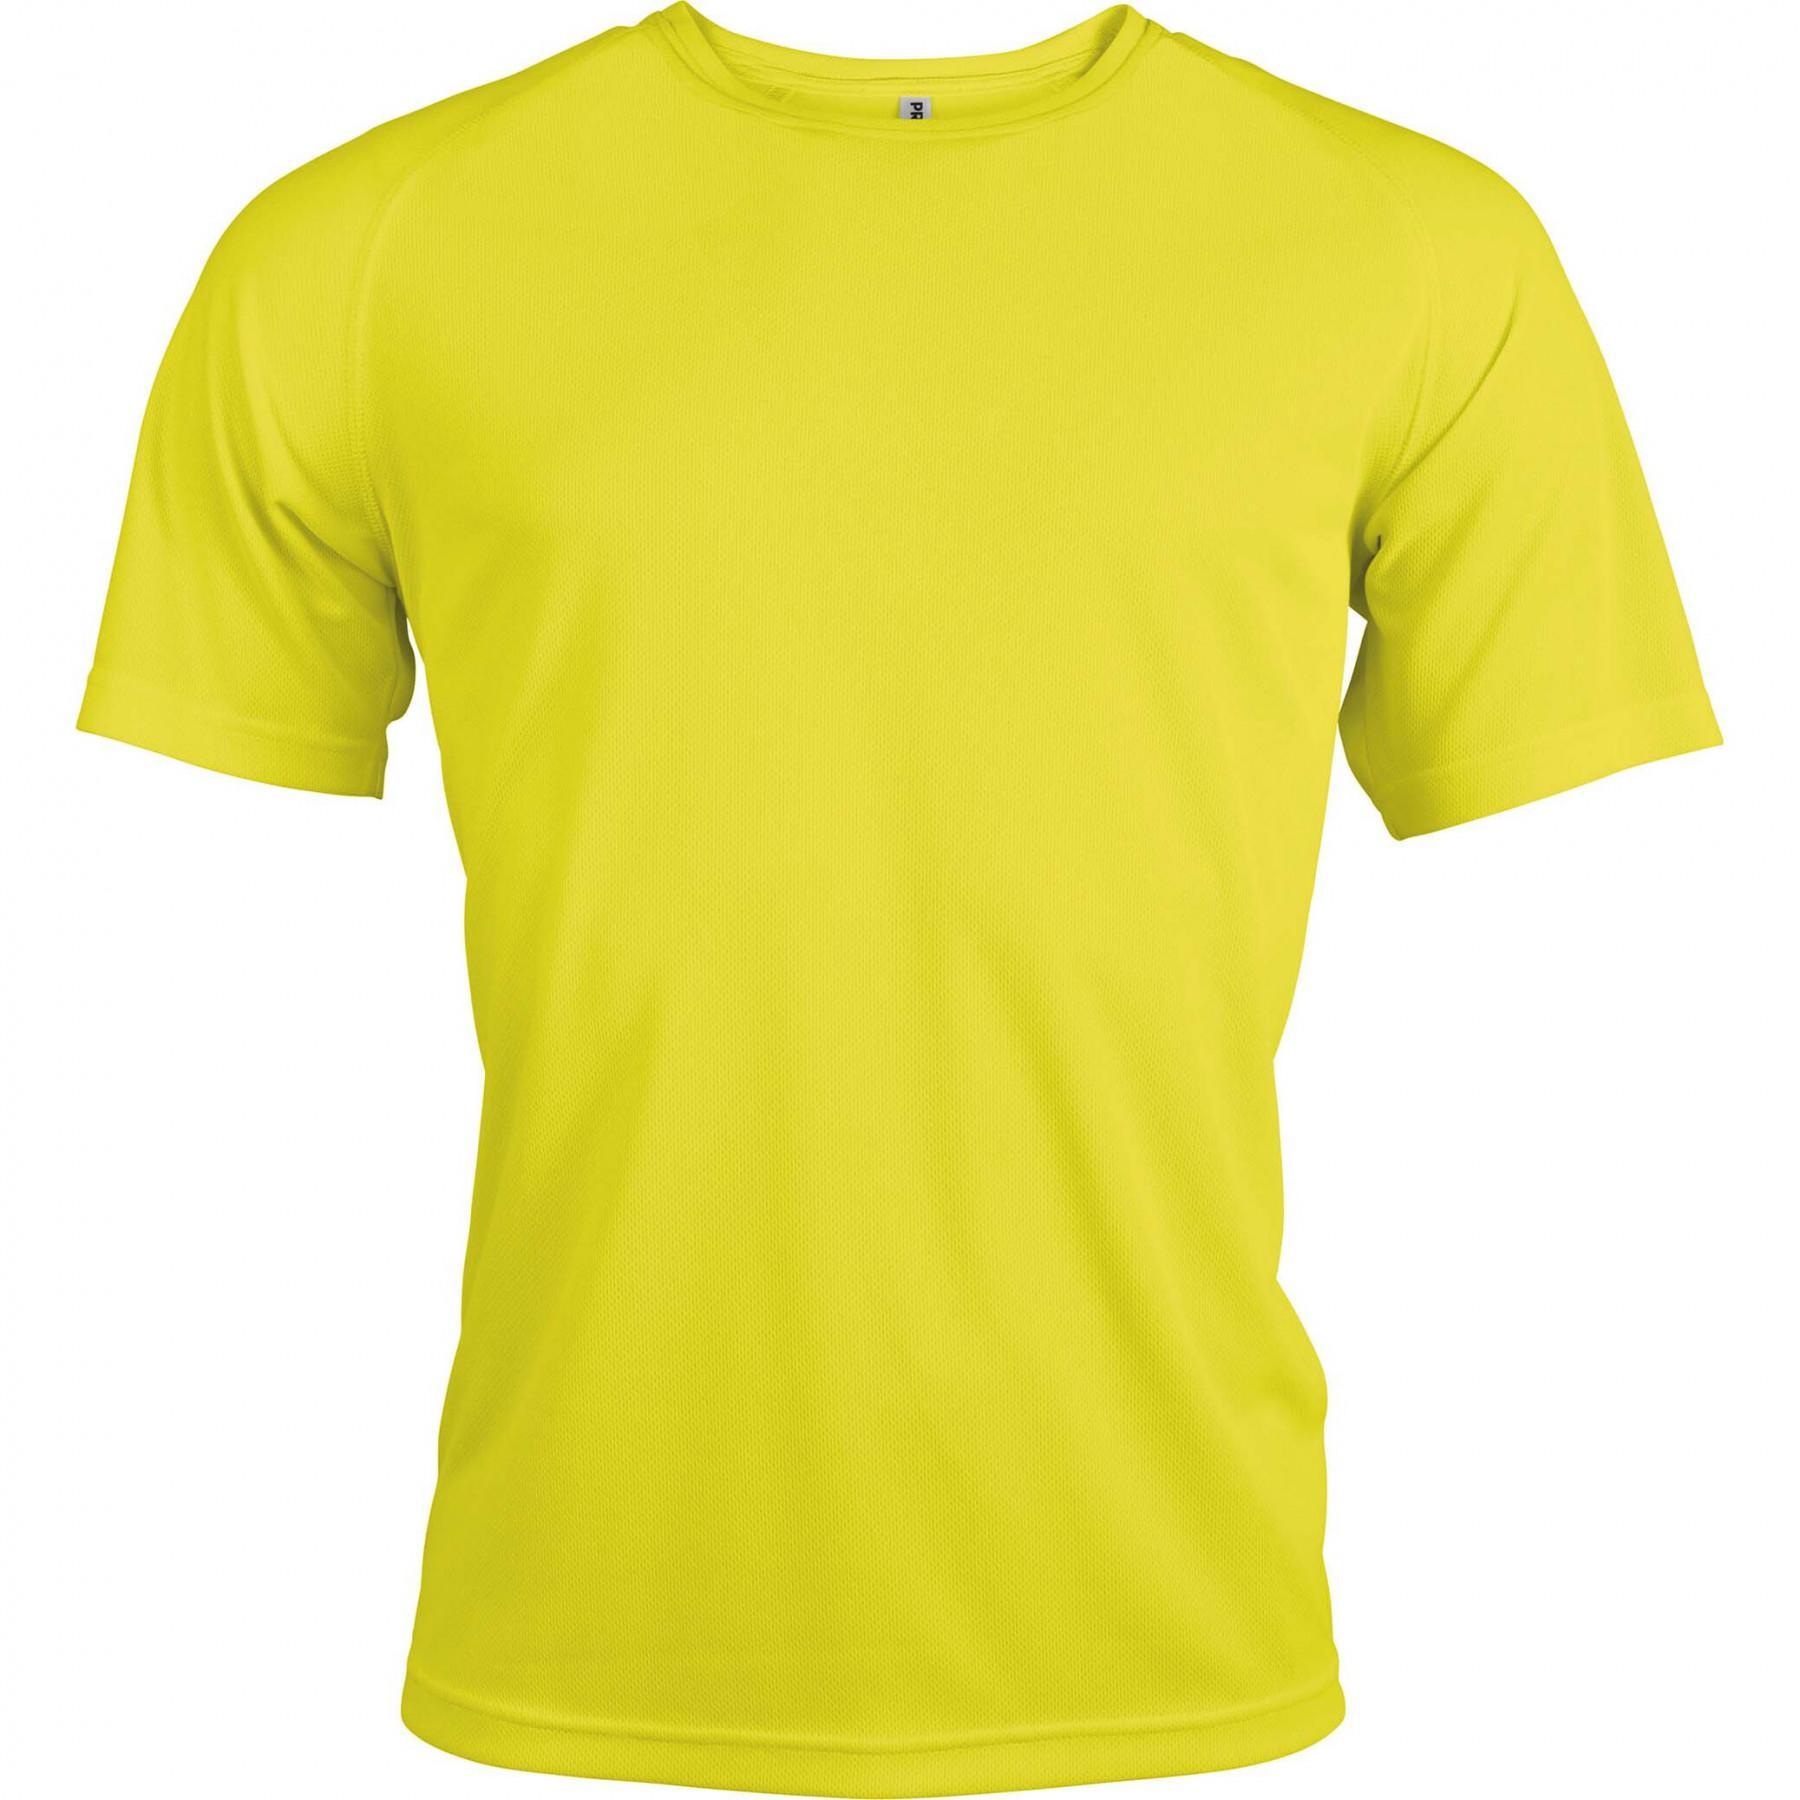 Short-sleeved sport T-shirt Proact